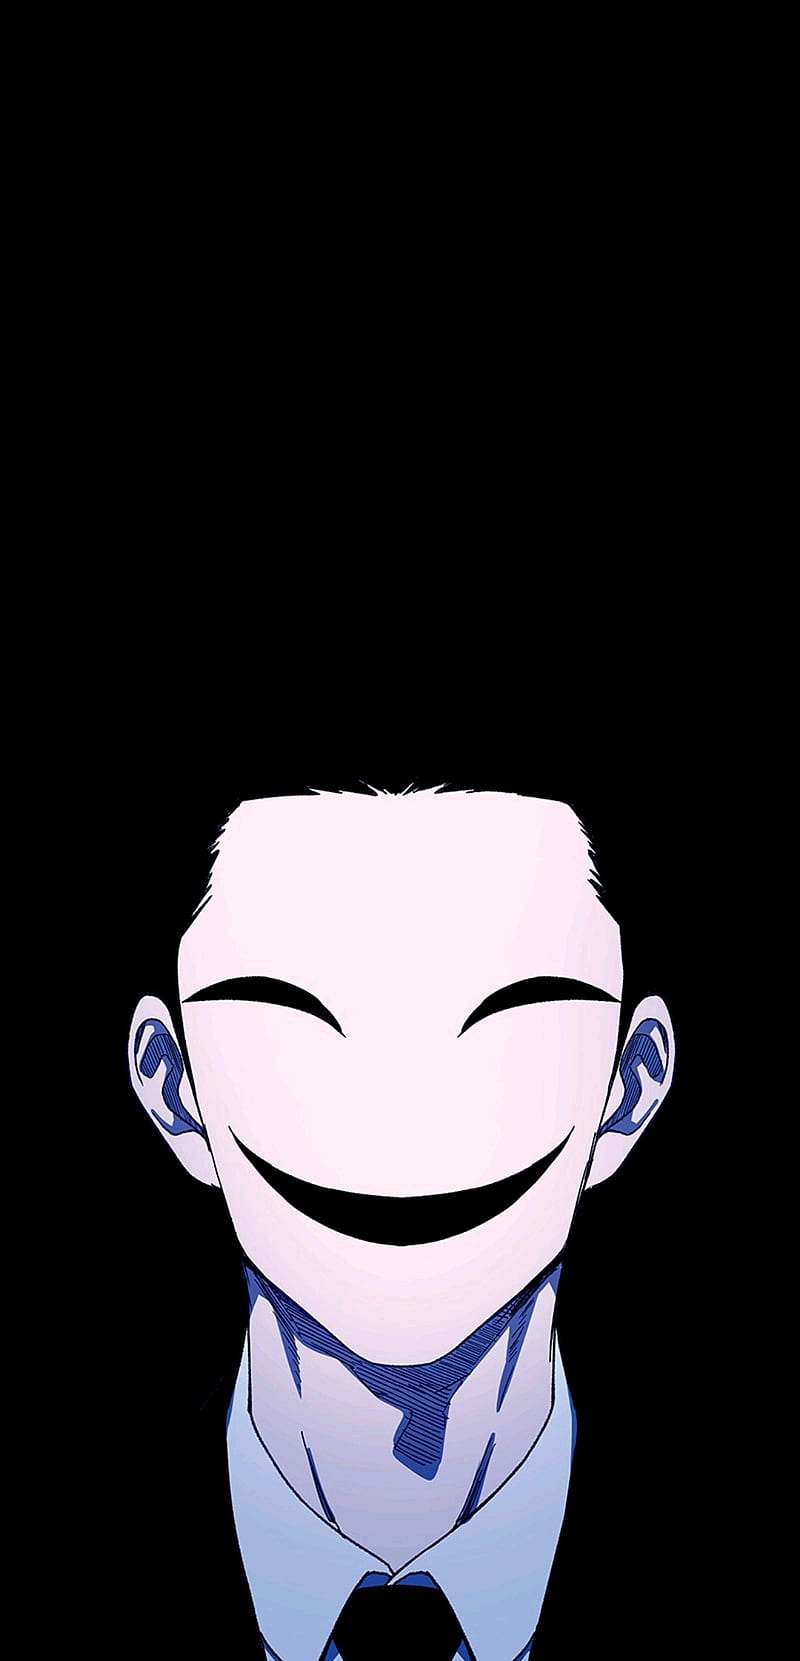 Persona 5 - Joker | Anime Art Amino-demhanvico.com.vn